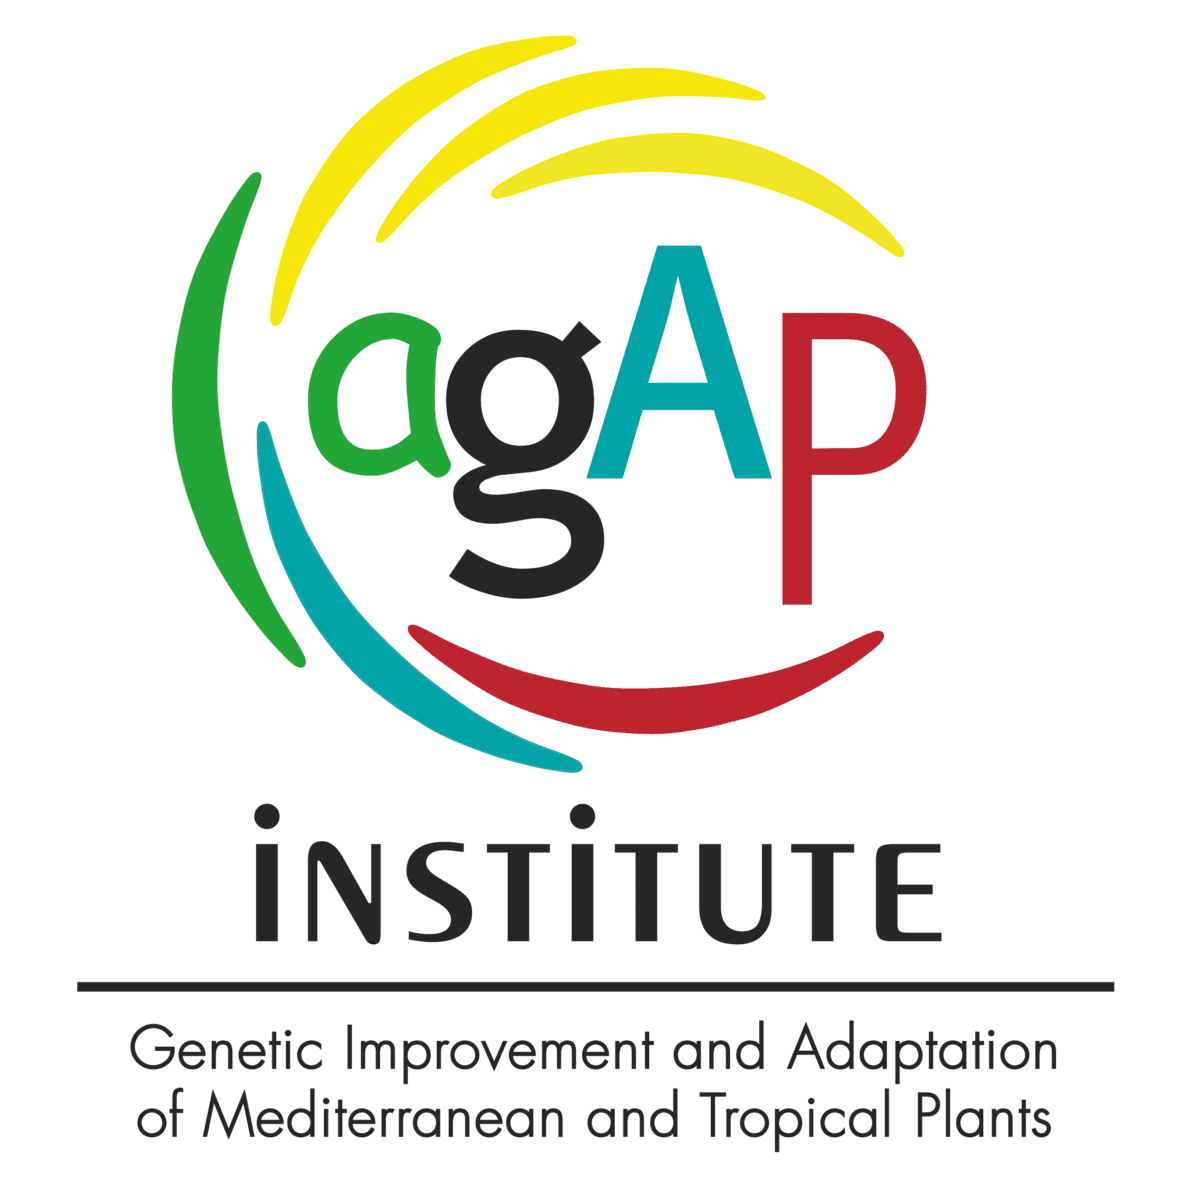 New Association member for bloxberg: AGAP Institute